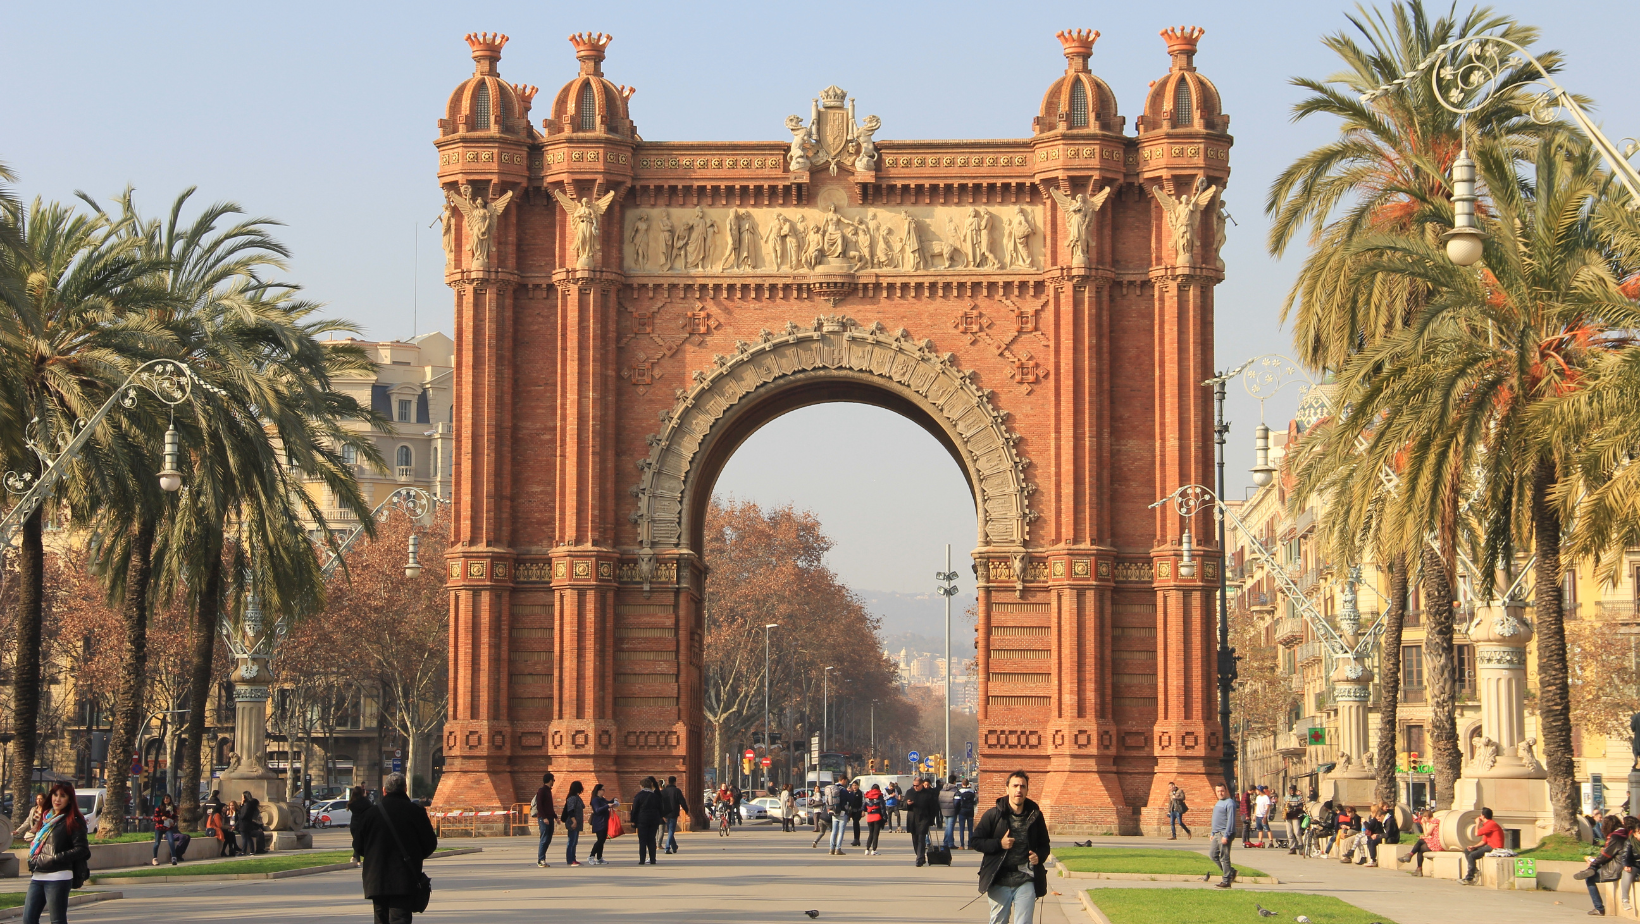 Lerne über das Arco de Triunfo in Spanien mit dem iSt Reiseführer